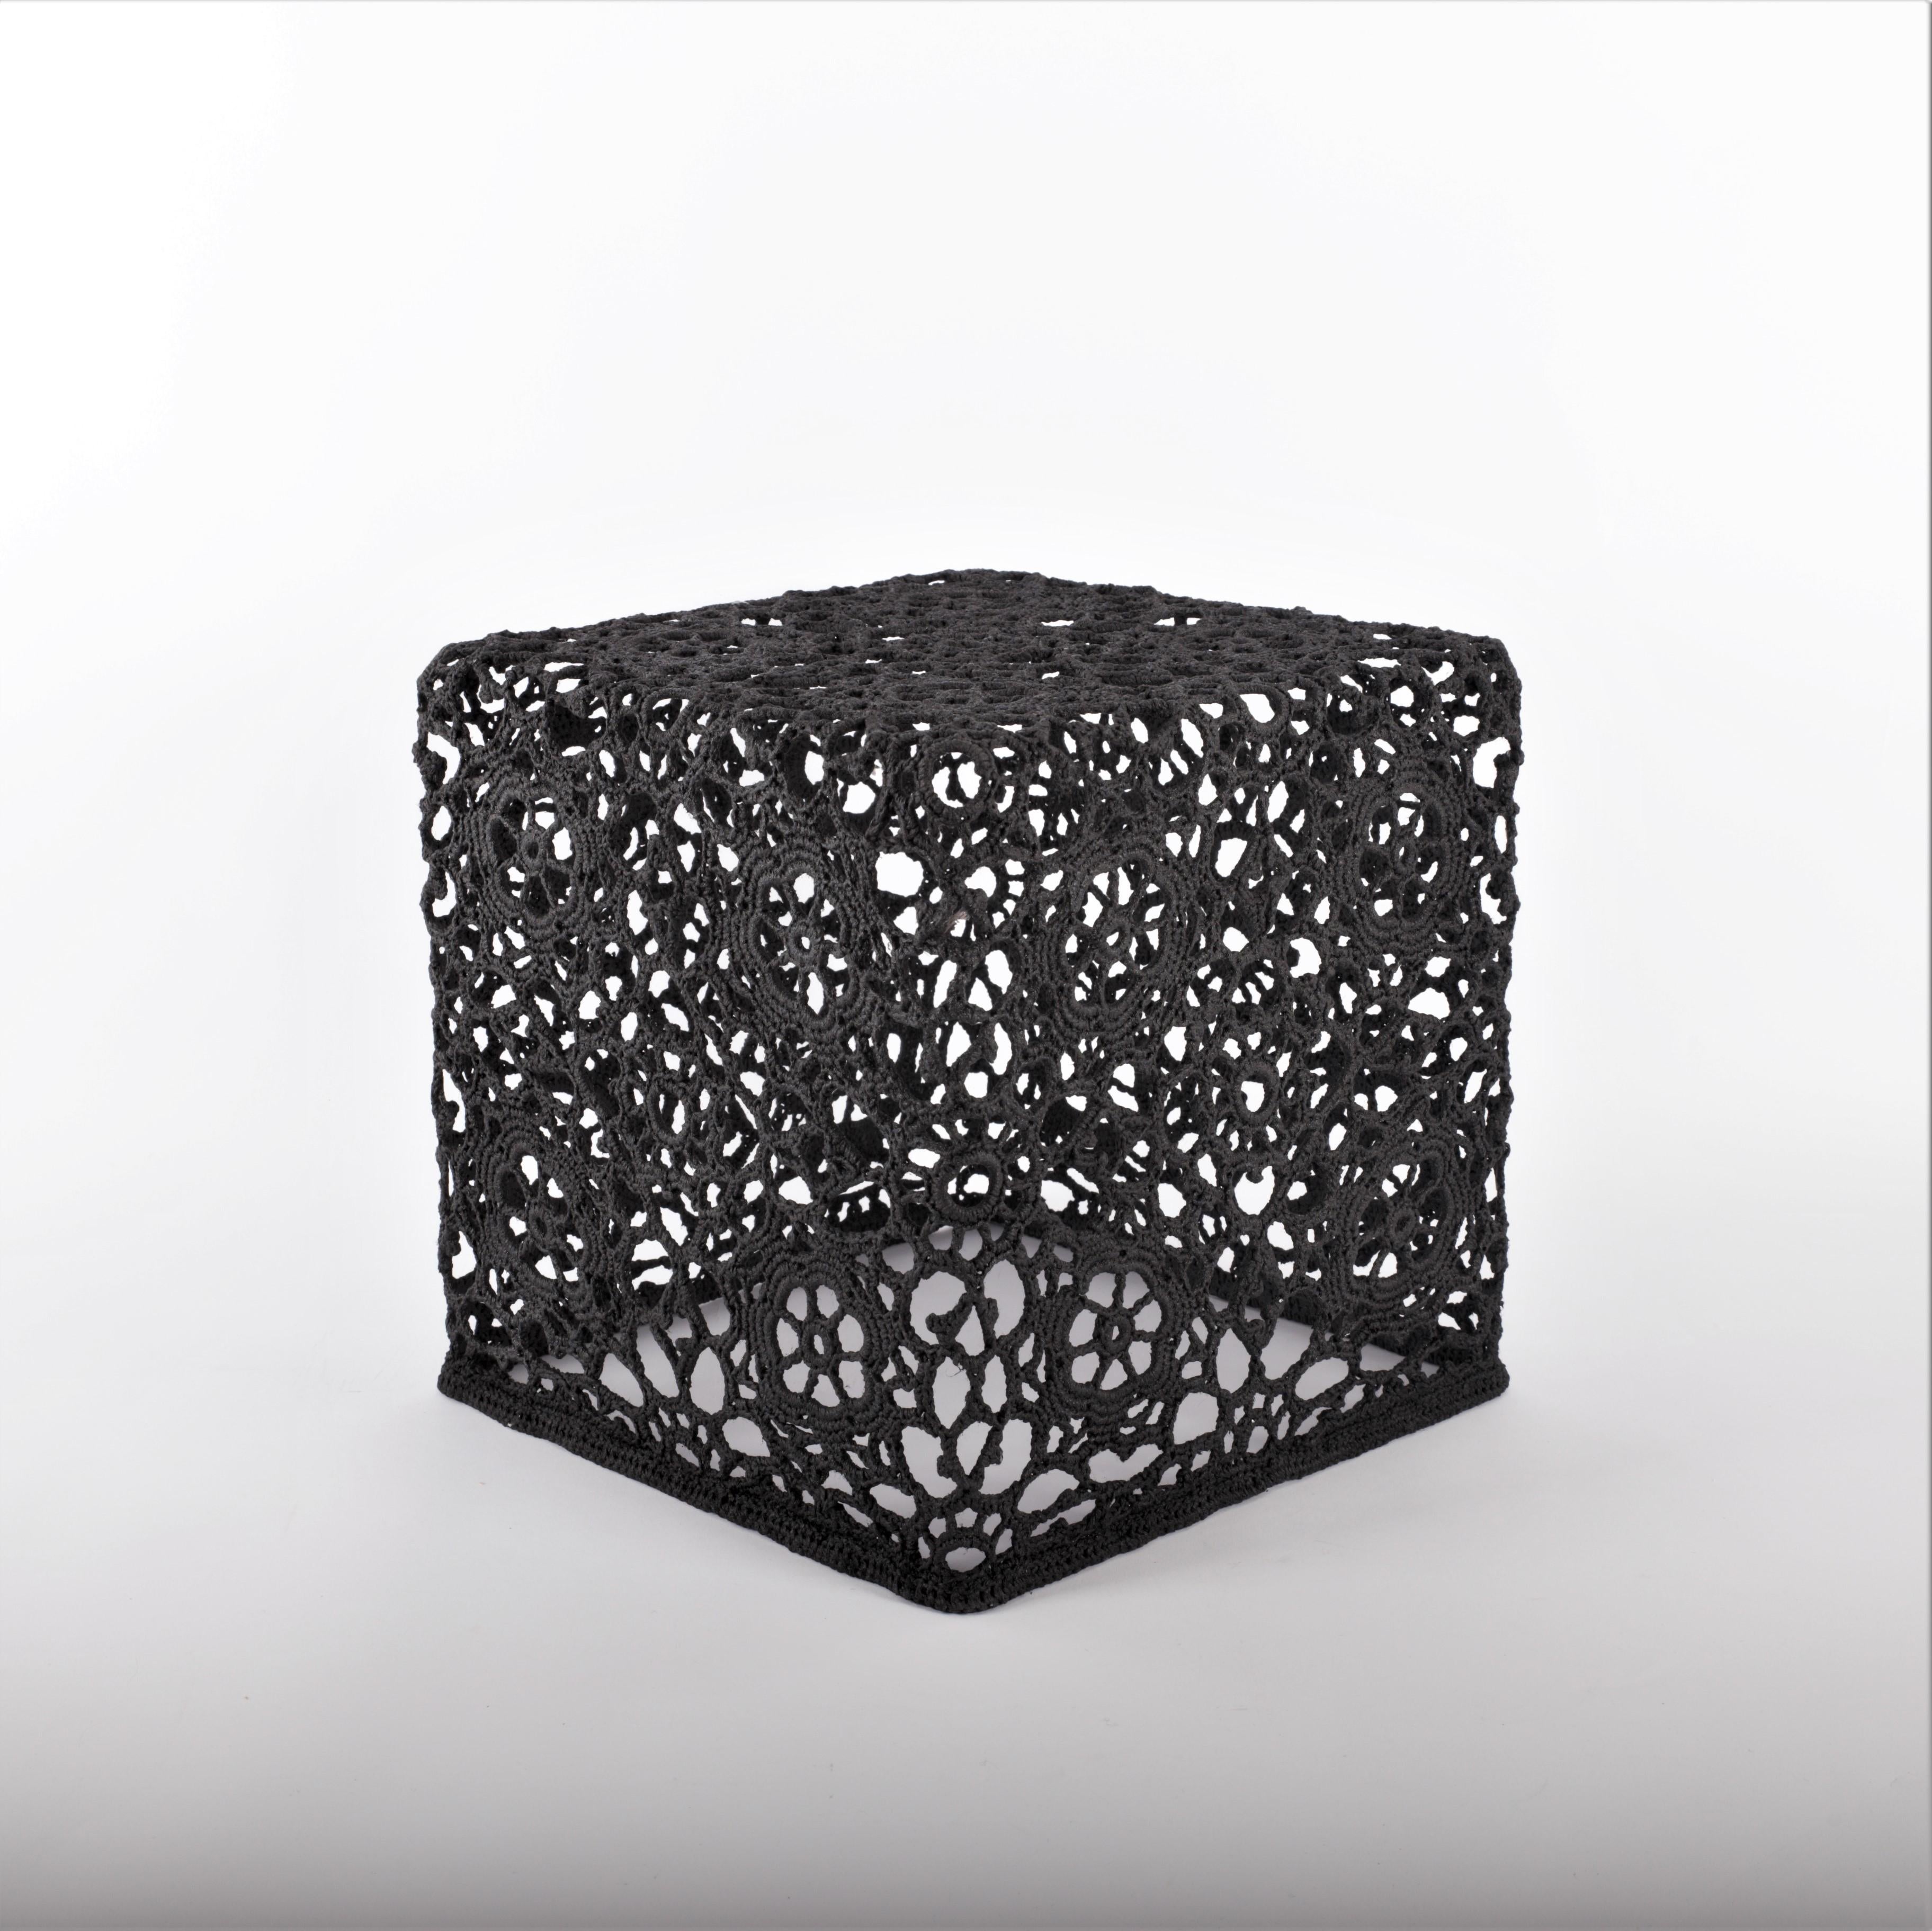 Dutch Crochet Side Table, Special Black 3, by Marcel Wanders, 2007 For Sale